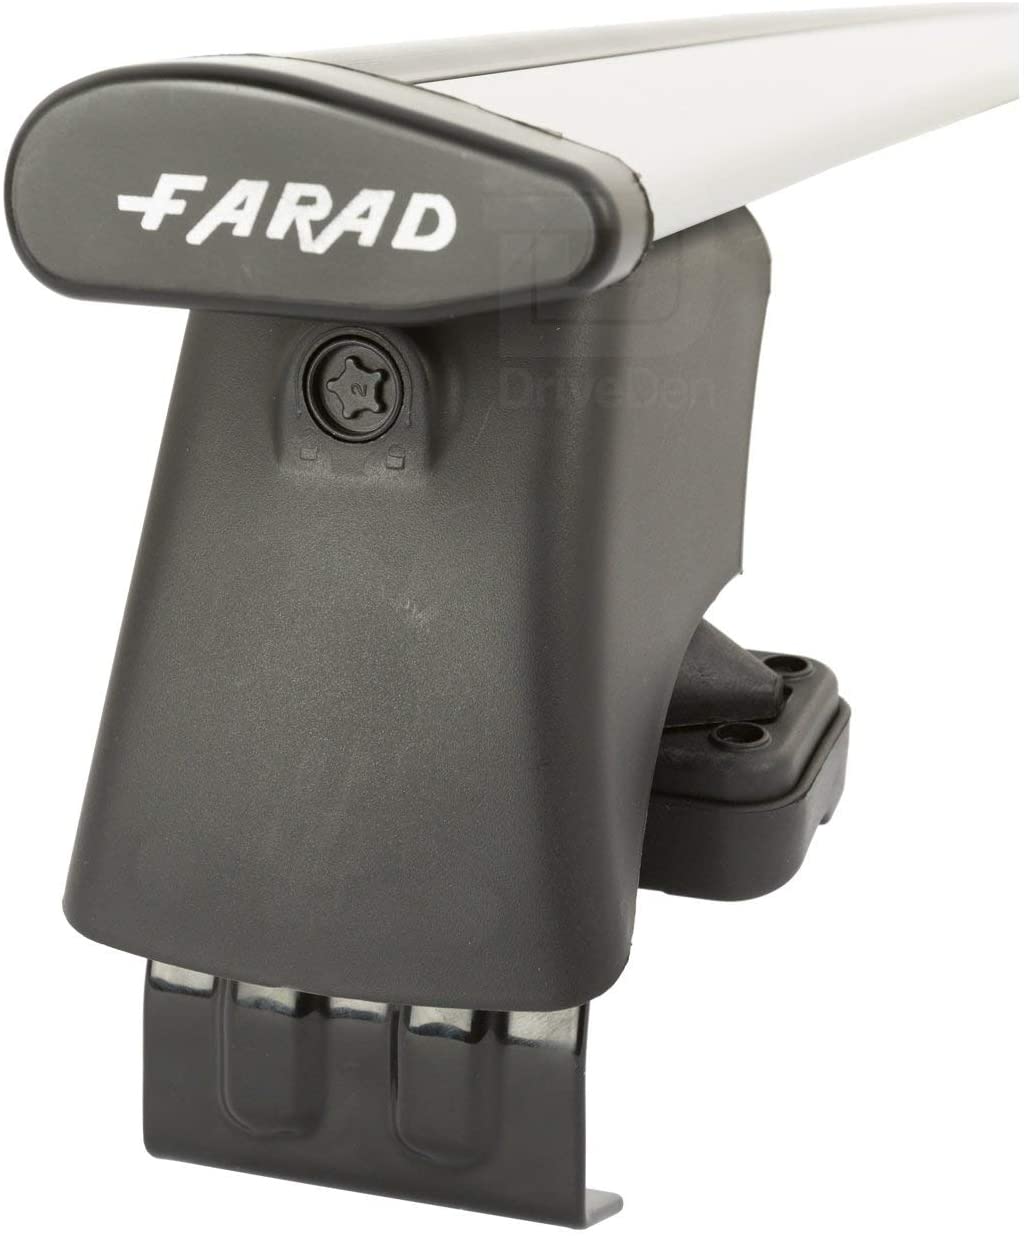 FARAD-Kit H2 per barre portatutto - Volkswagen Golf 6 2008-2013 (senza corrimano)